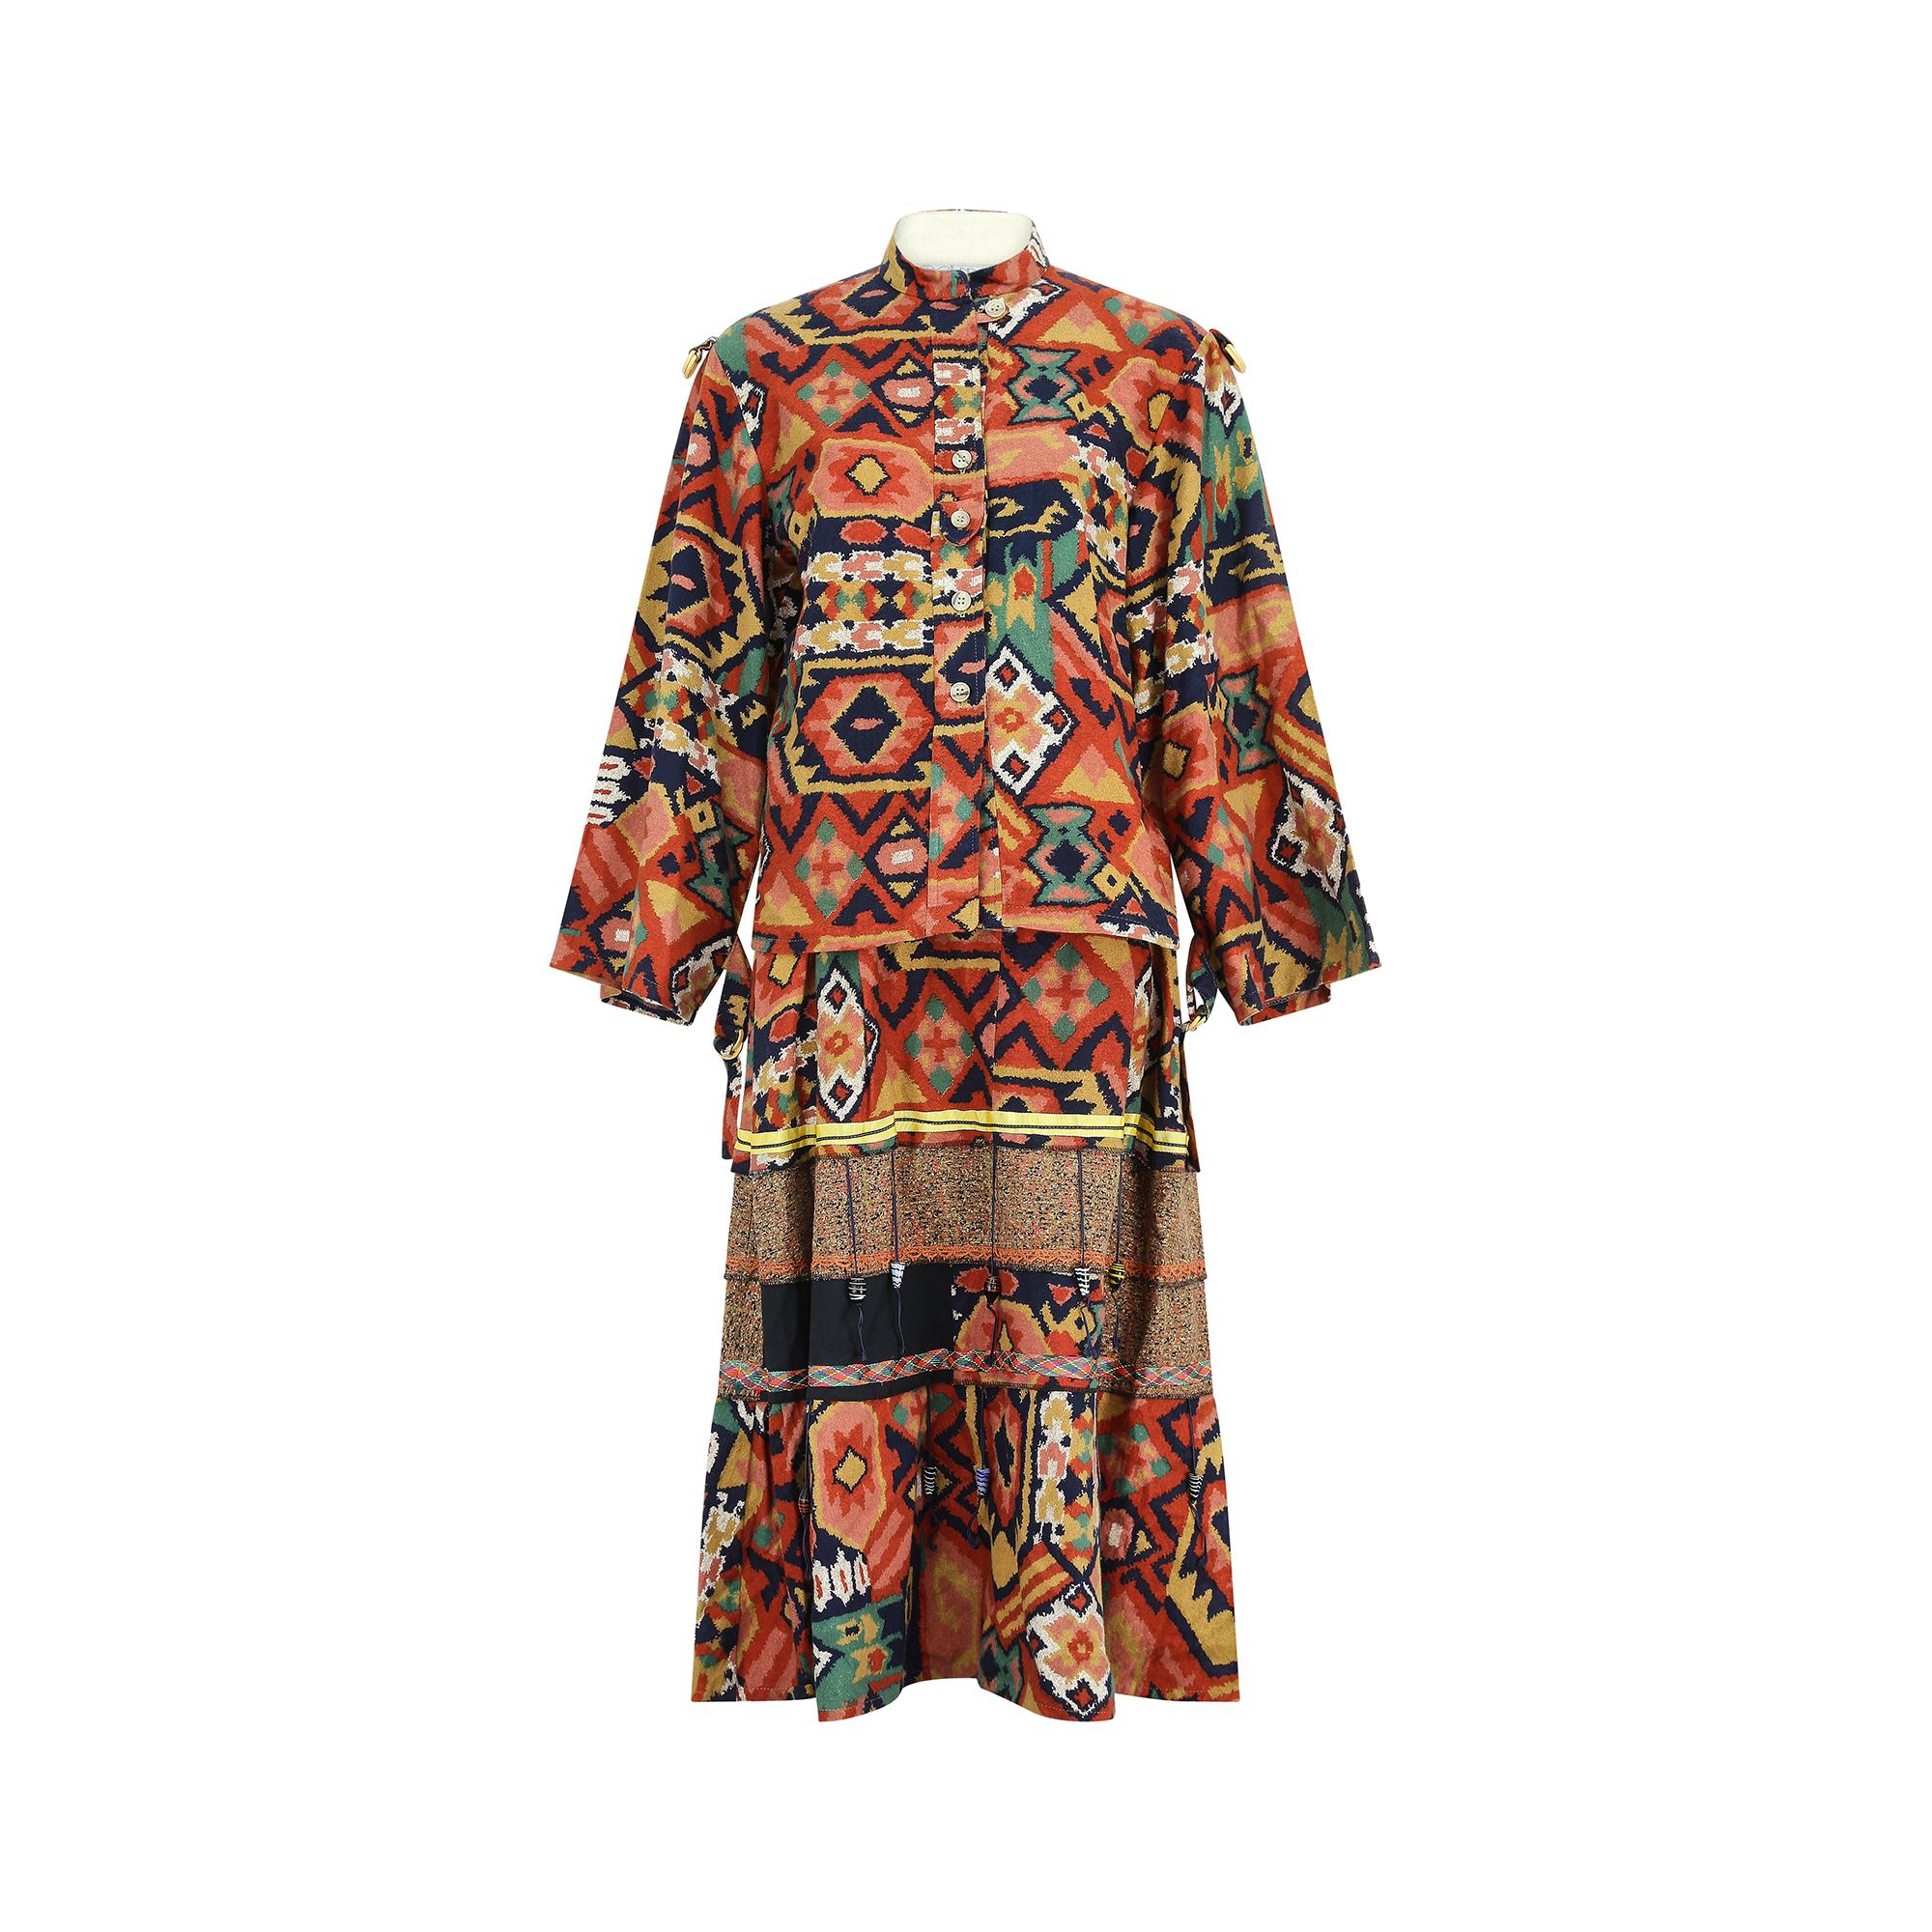 Cette jupe et cette veste coordonnées ont été conçues par Janet Moira, une boutique de mode éphémère située à Covent Garden à la fin des années 1970 et au début des années 1980. Il est taillé dans une flanelle de pur coton doux à l'imprimé